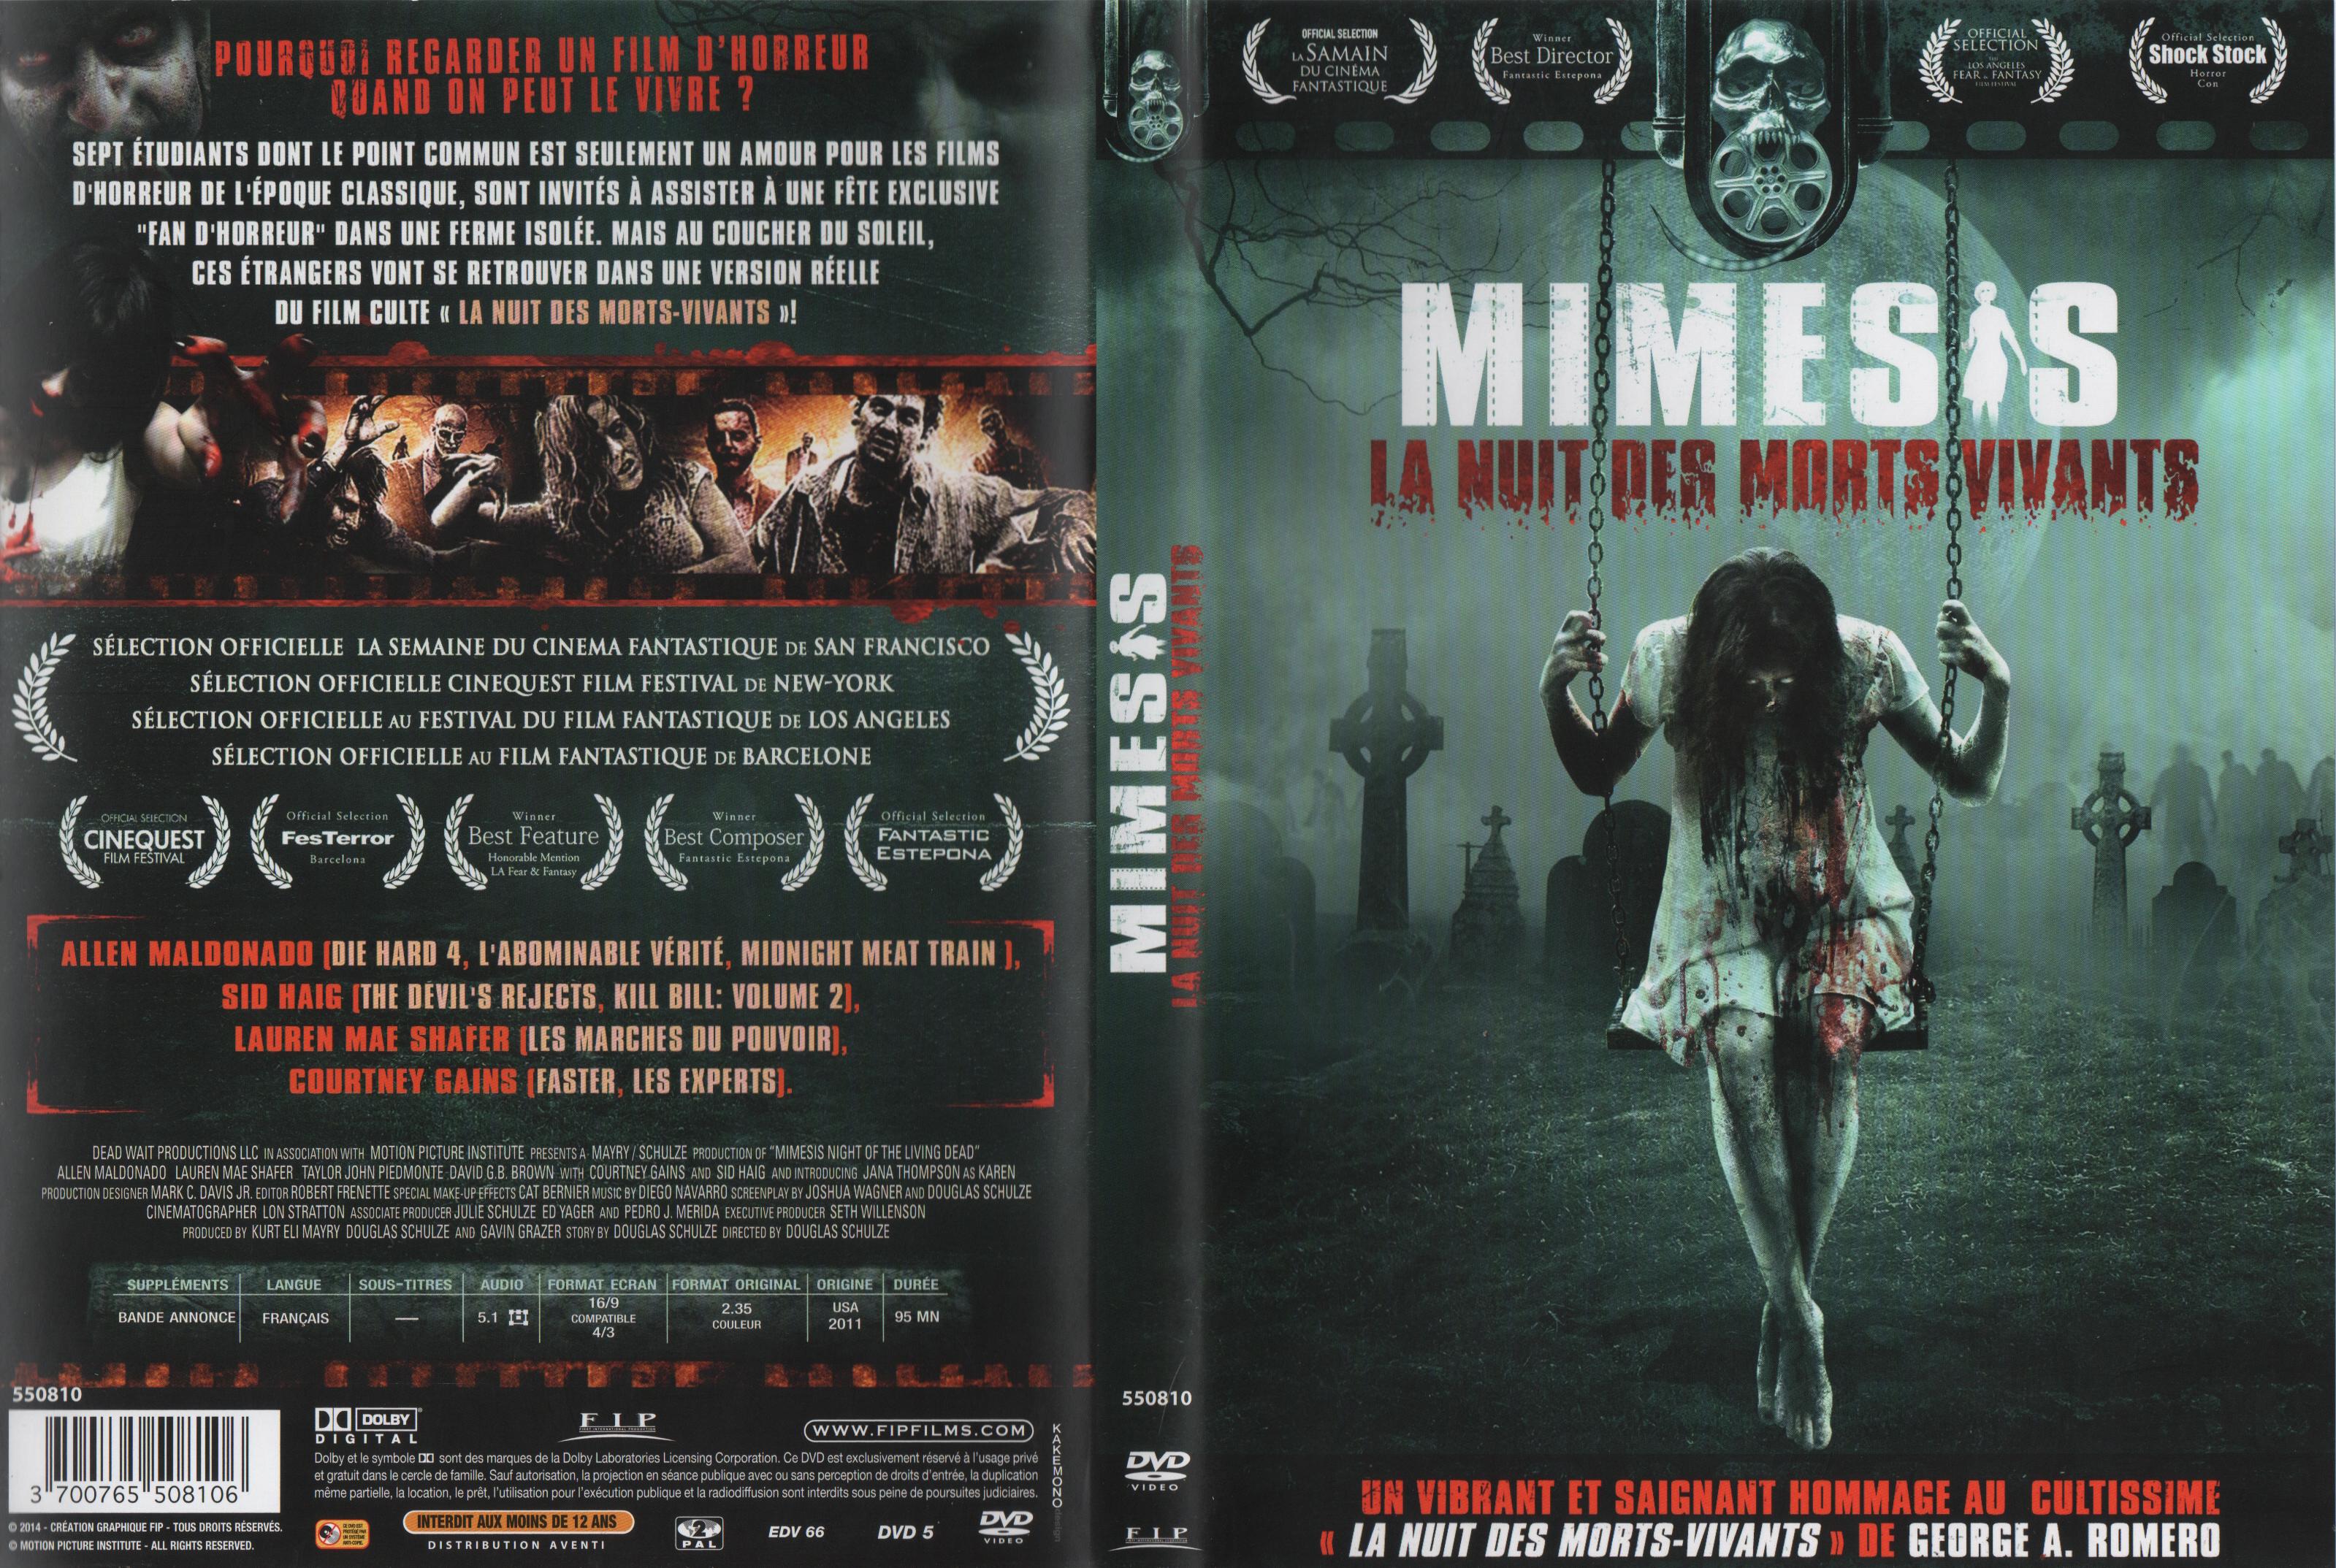 Jaquette DVD Mimesis La nuit des morts vivants